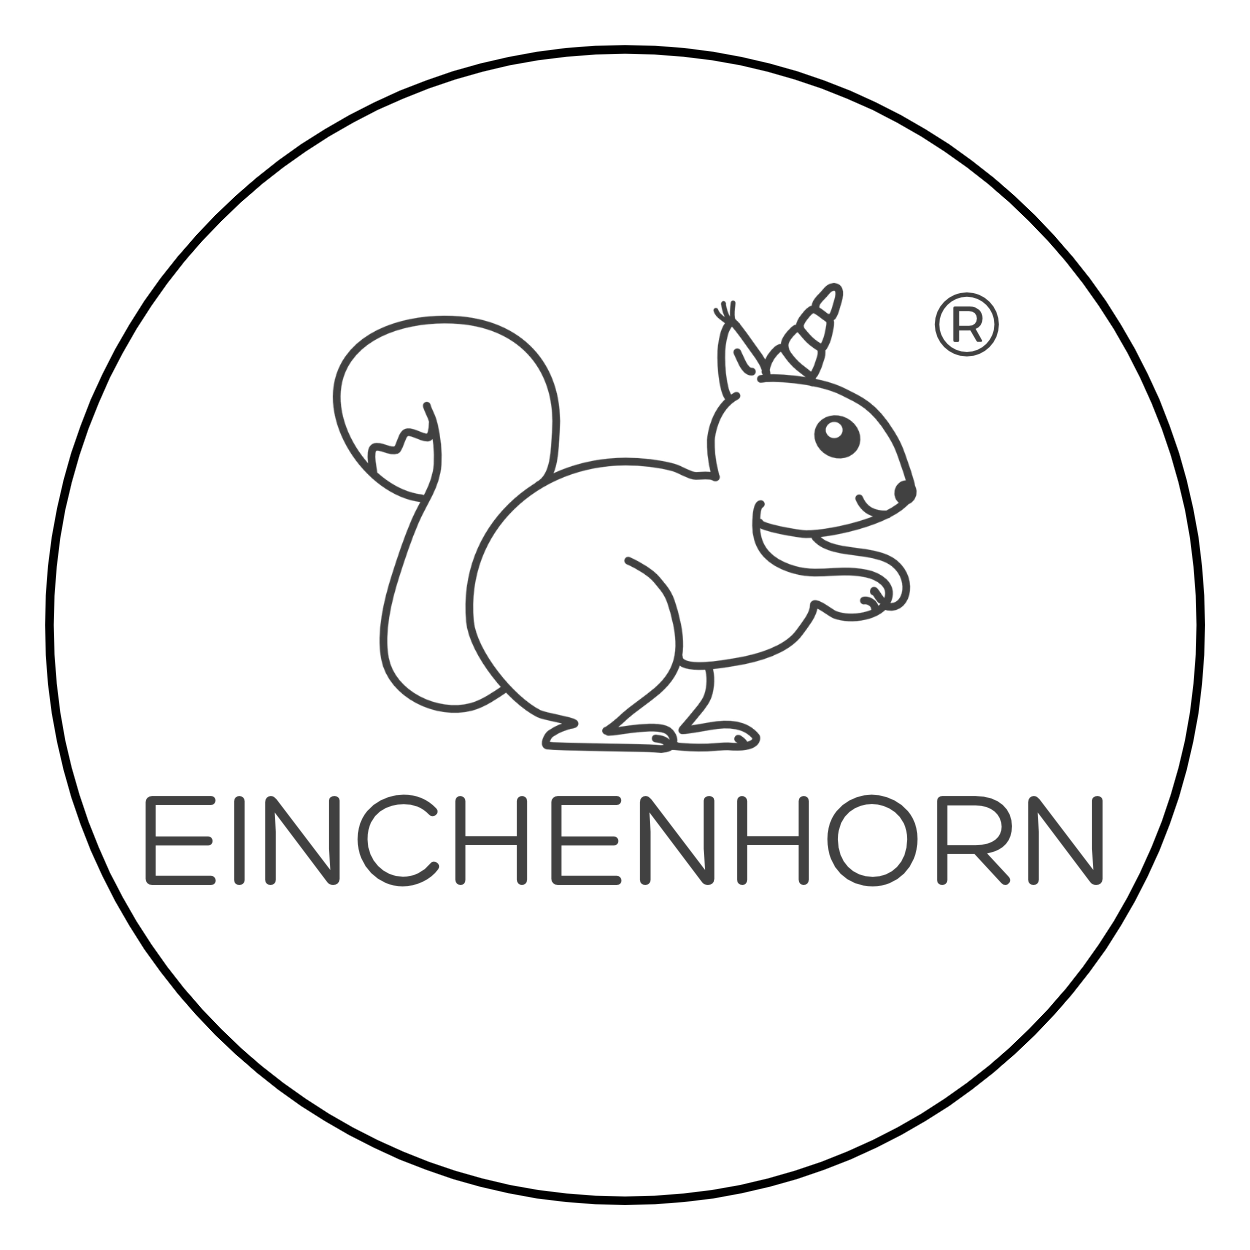 Einchenhorn